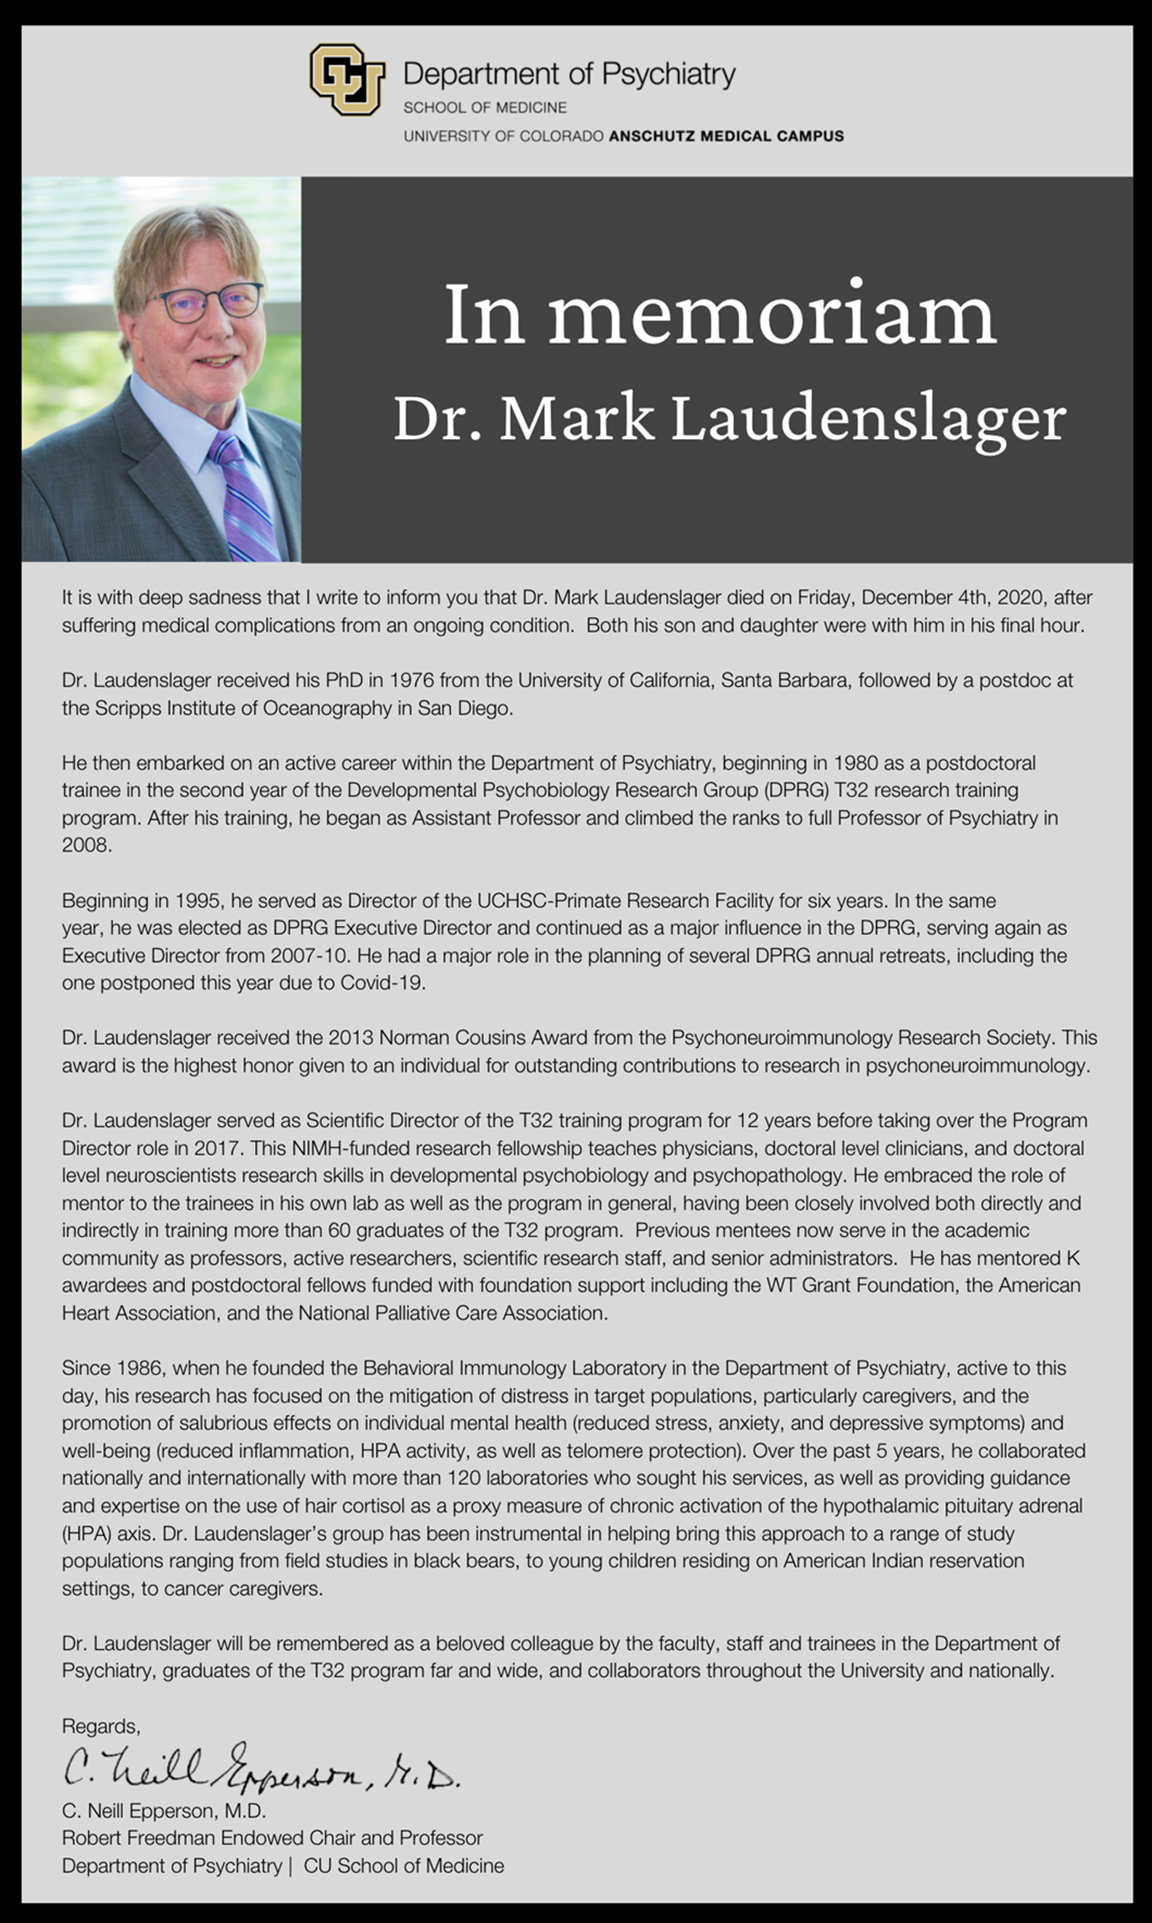 Dr. Mark Laudenslager